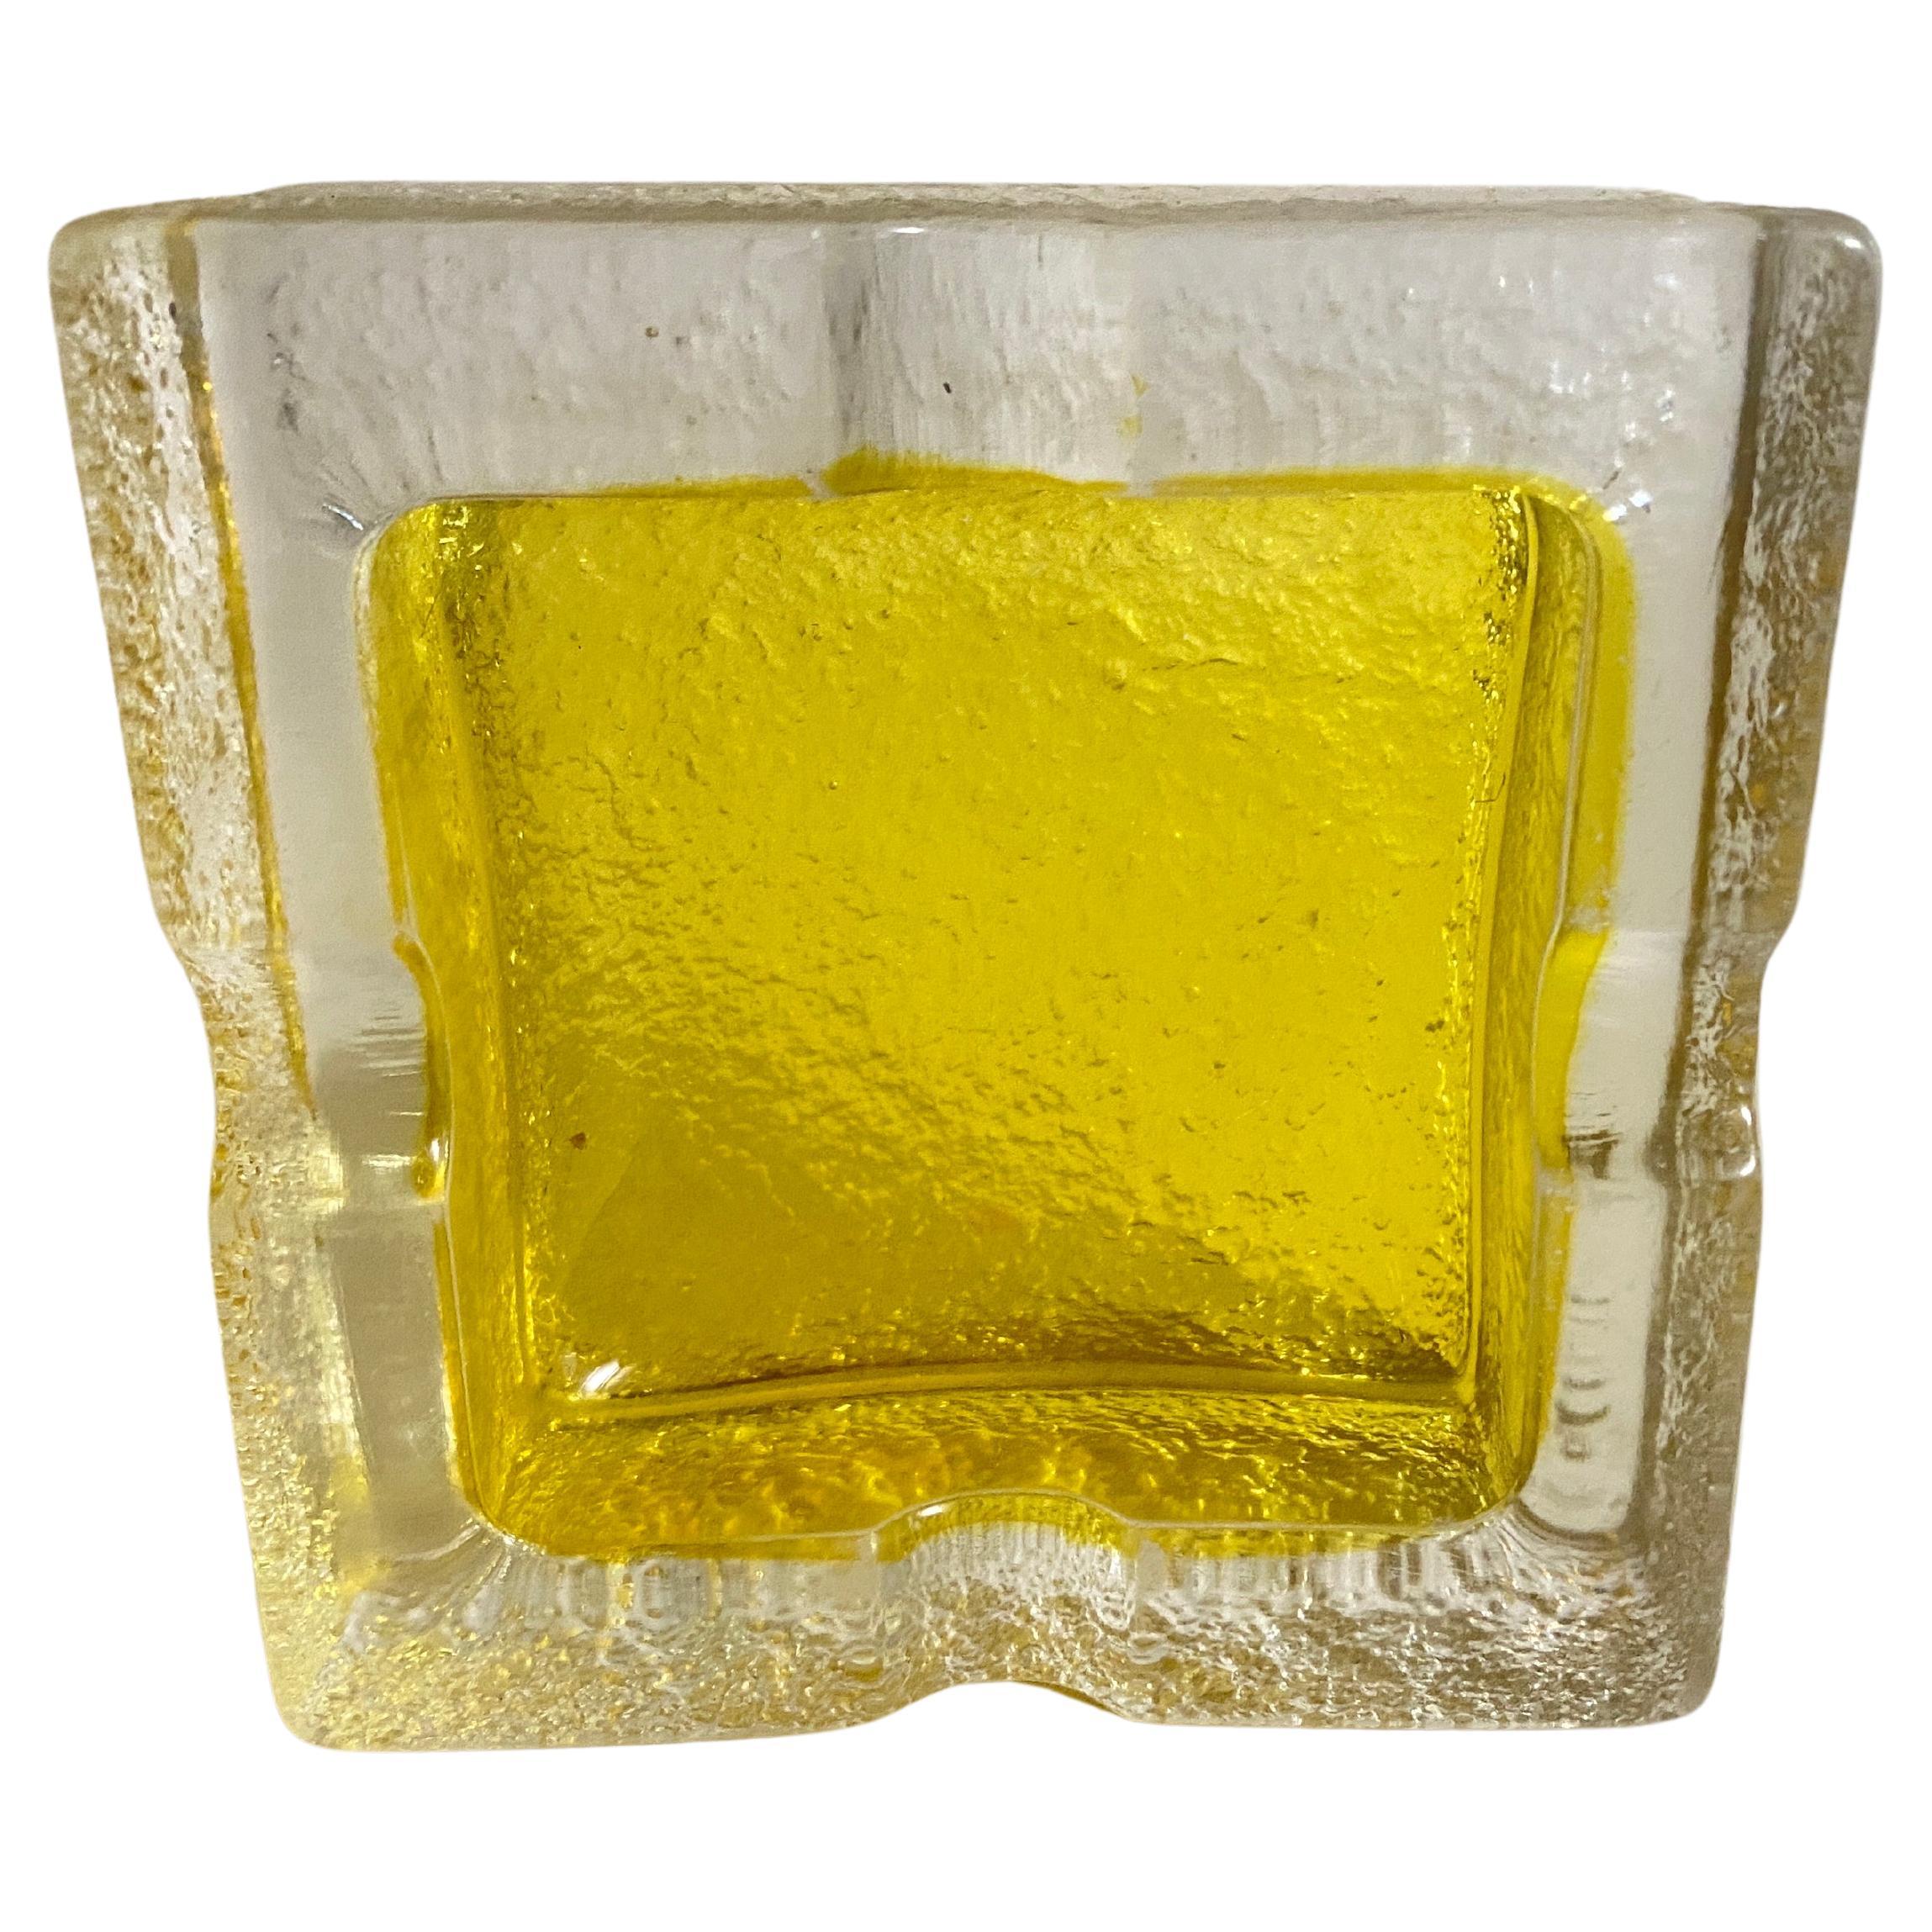 Diese vide poche oder Aschenbecher in Glas. Sie wurde um 1970 in Frankreich durchgeführt.
Transparente und gelbe Farbe.